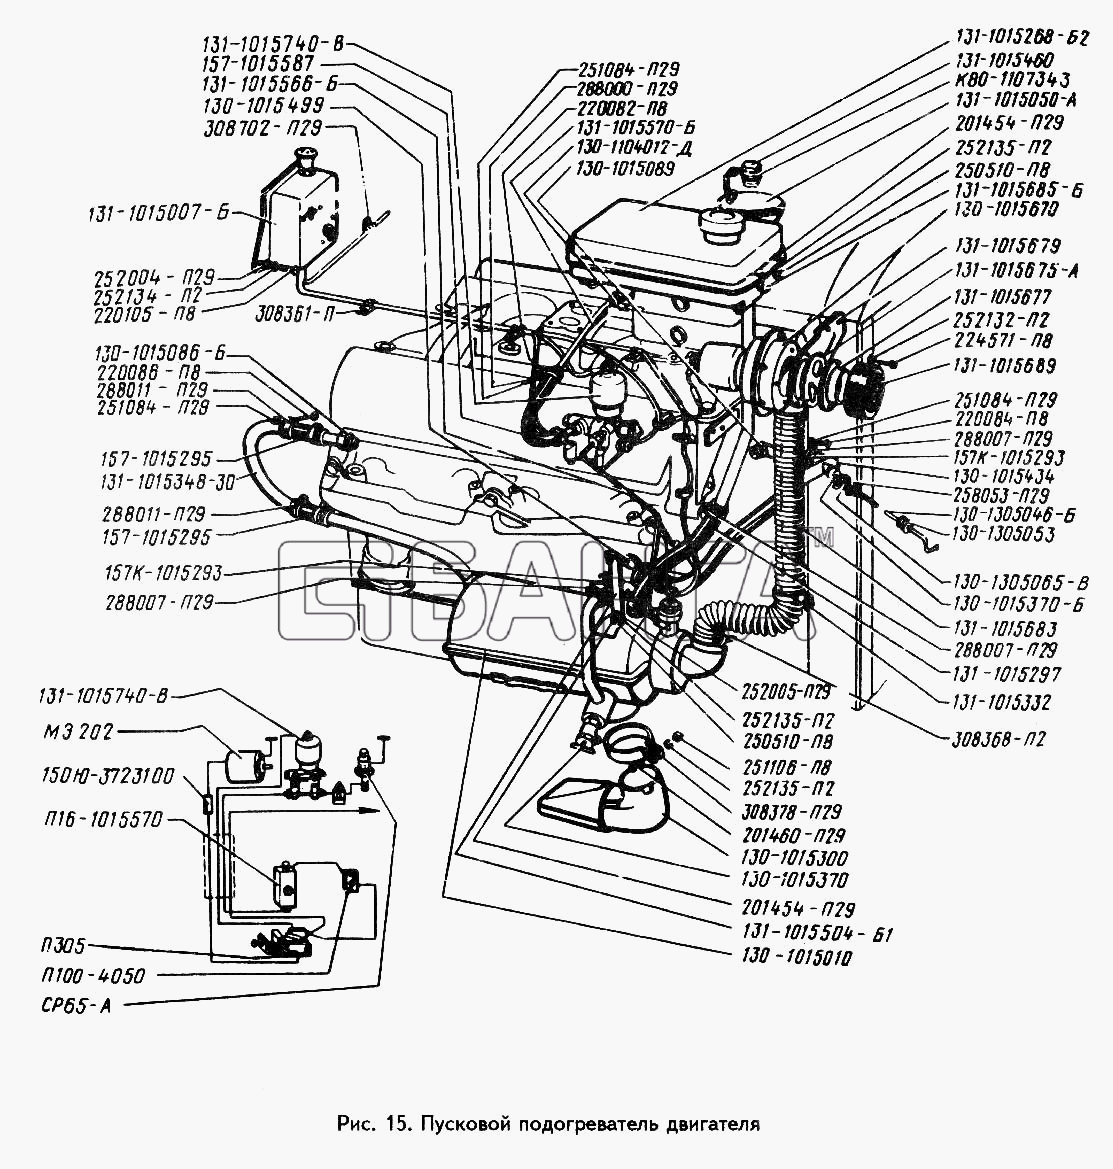 ЗИЛ ЗИЛ 433360 Схема Пусковой подогреватель двигателя banga.ua